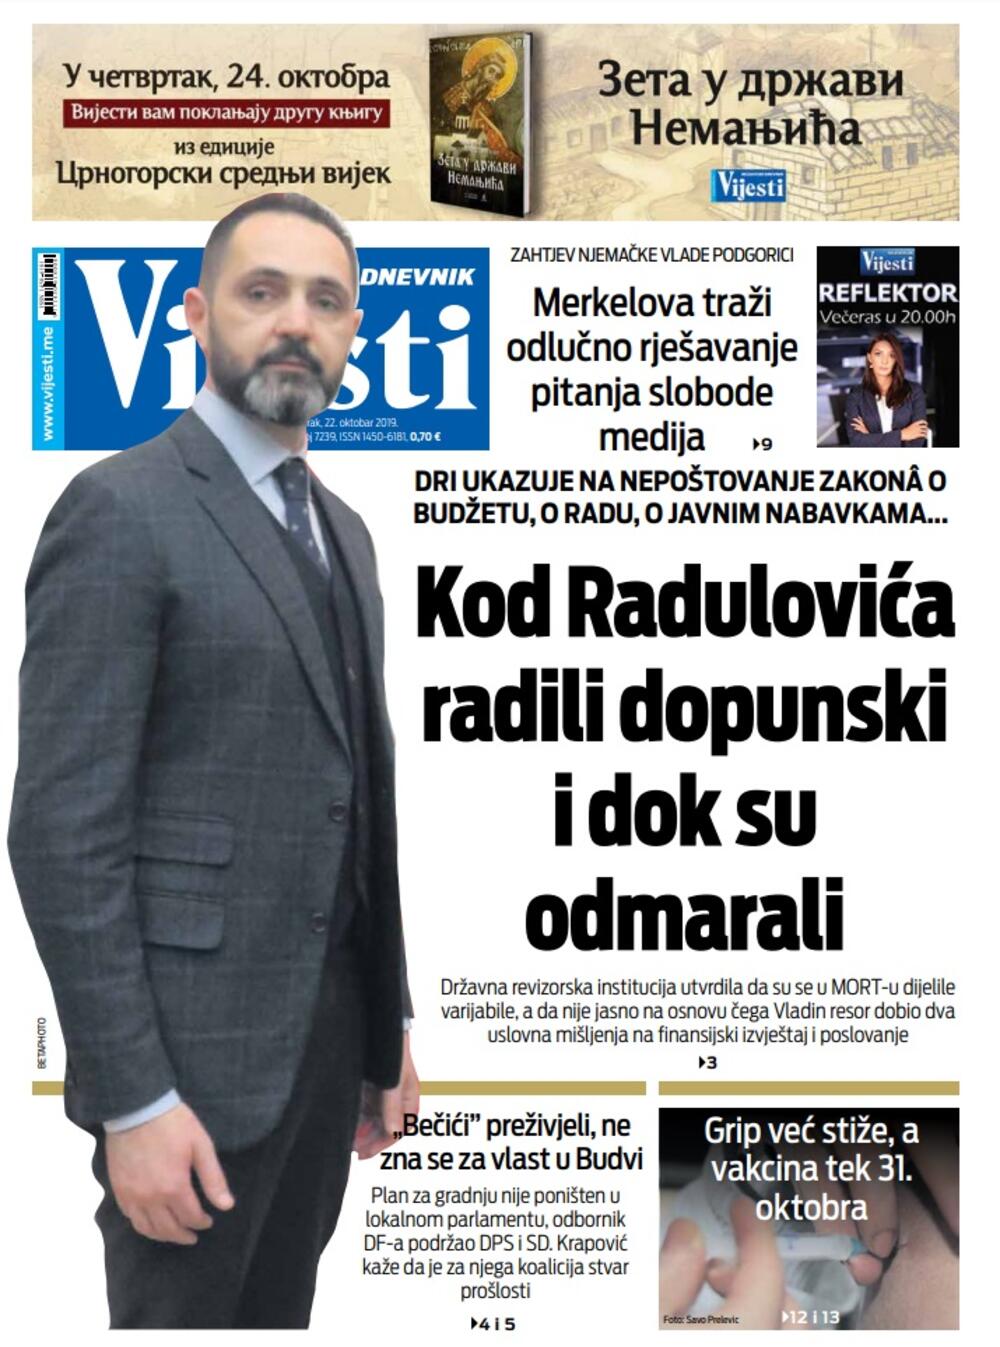 Naslovna strana "Vijesti" za 22. oktobar 2019., Foto: Vijesti